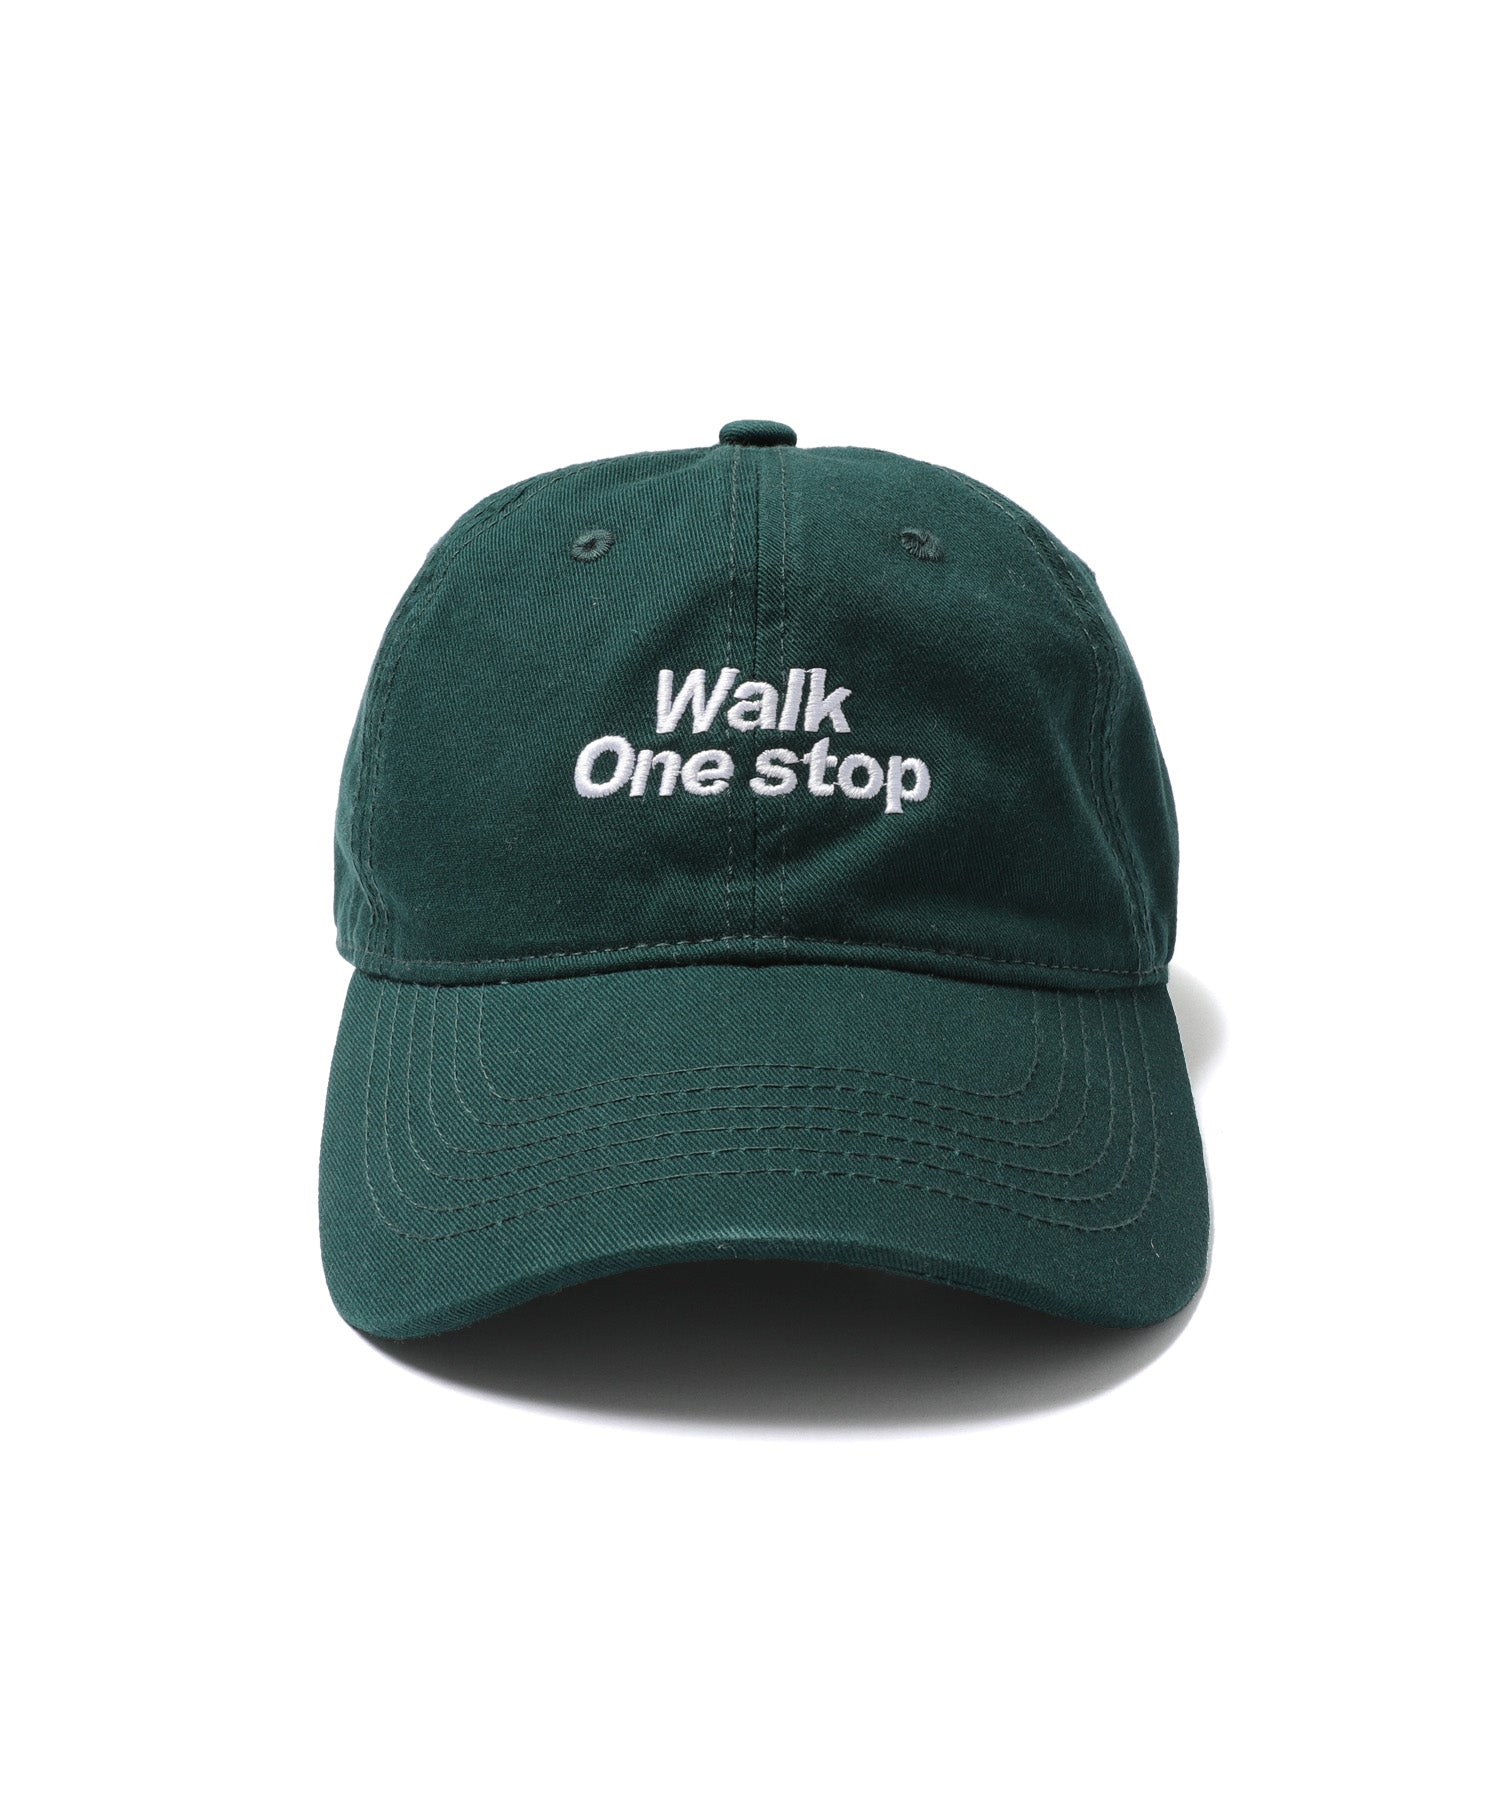 Walk One stop Cap